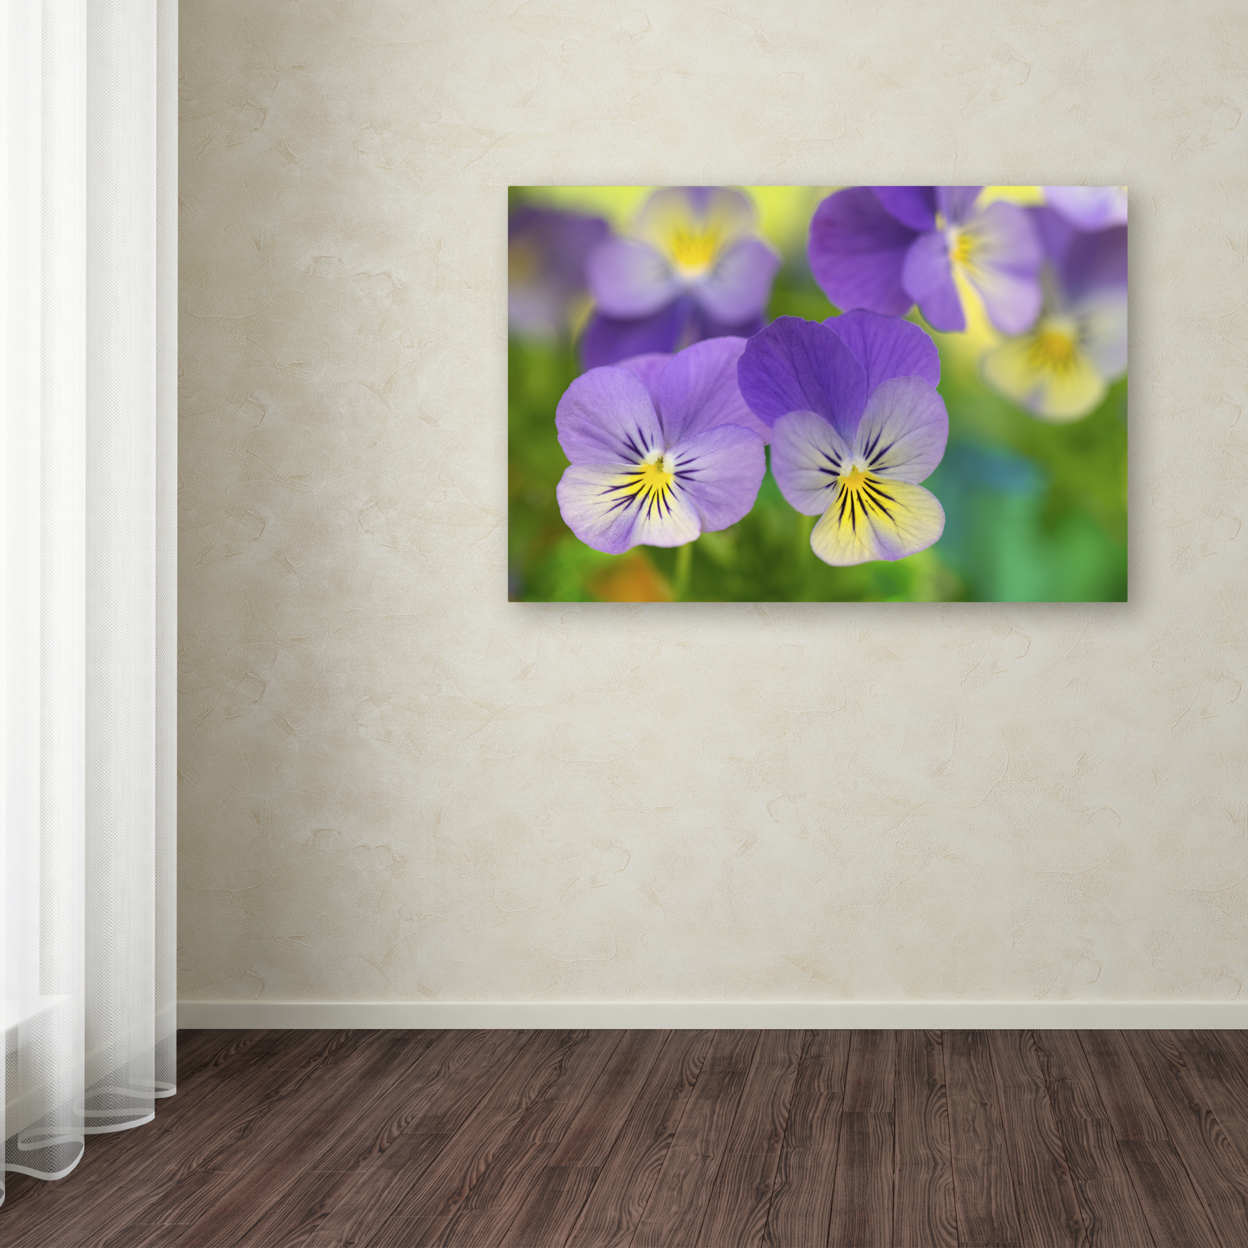 Cora Niele 'Violets' Canvas Art 16 X 24